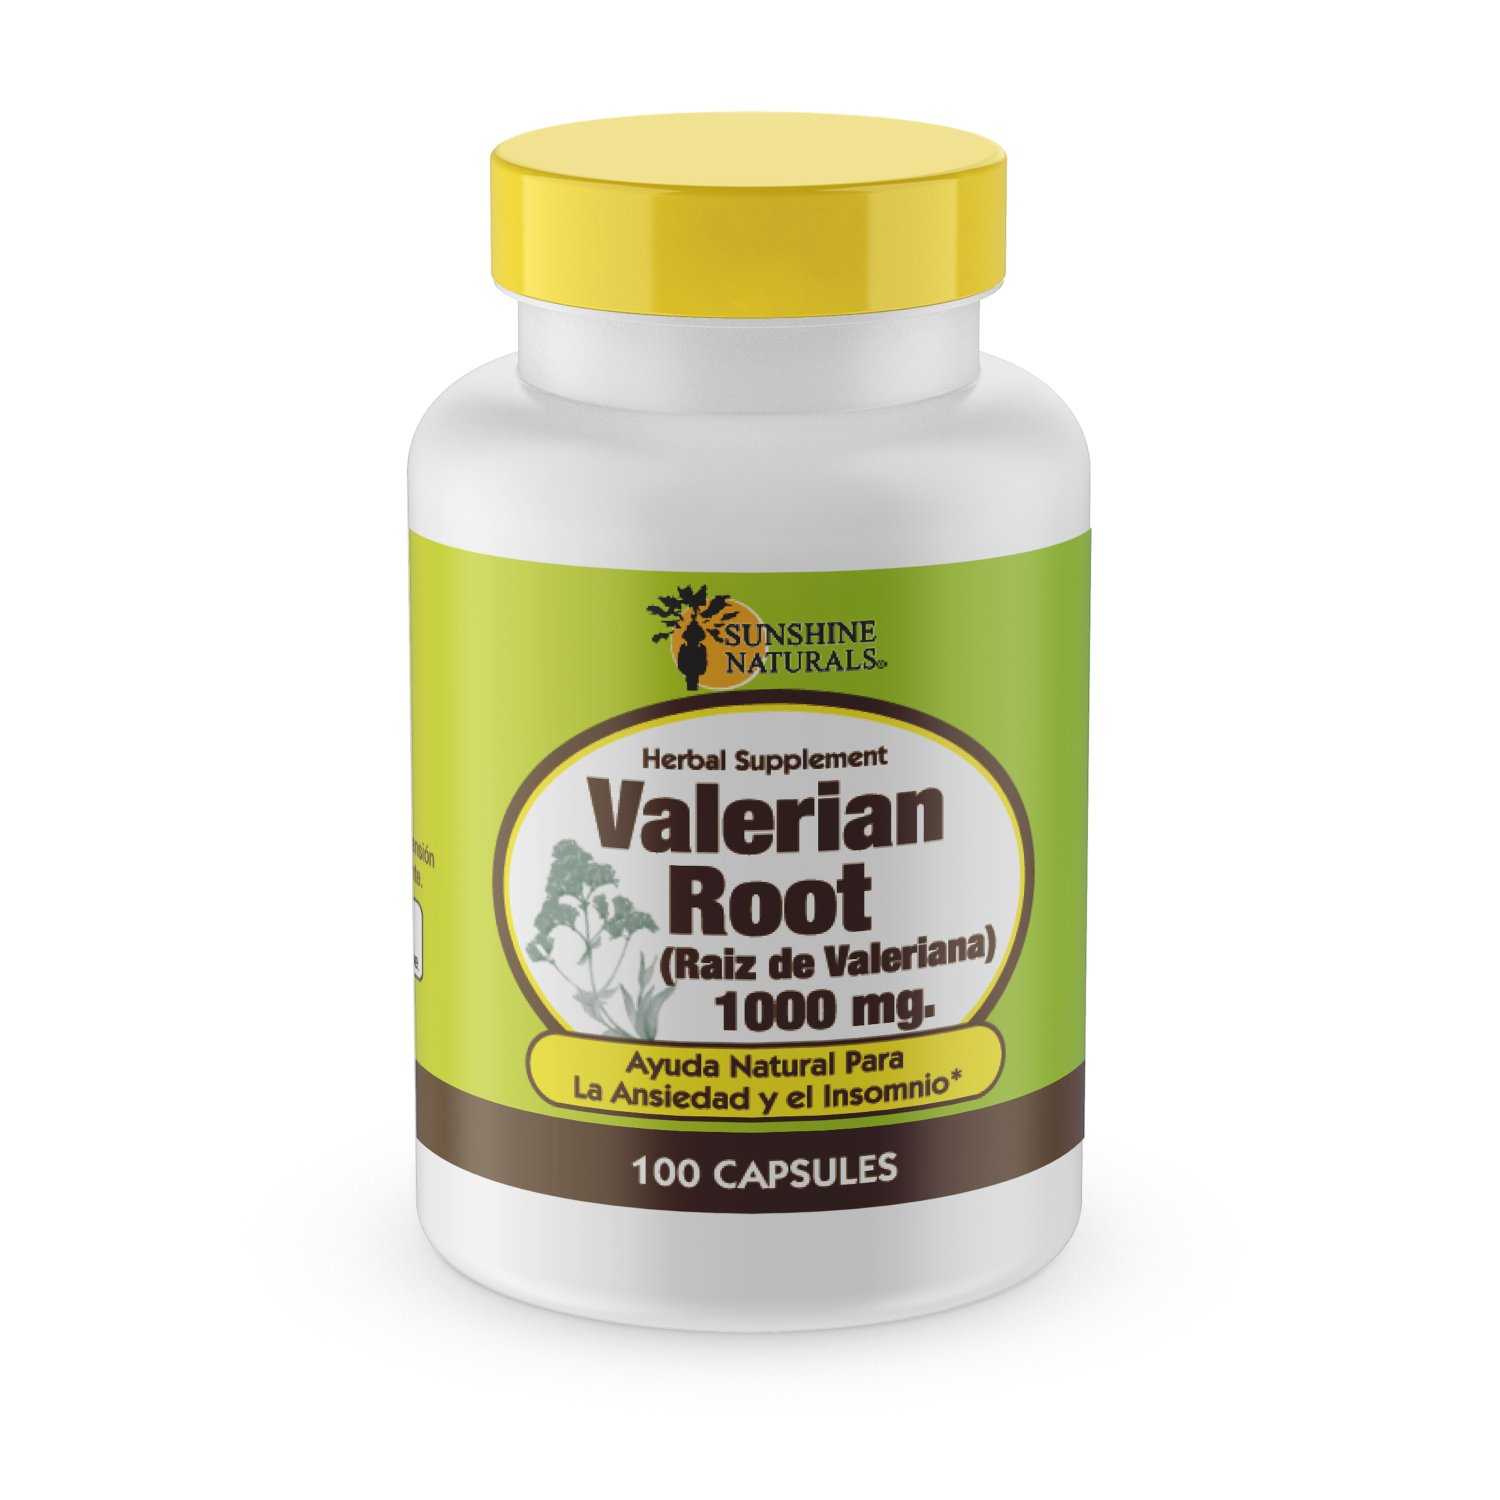 Sunshine Naturals Valerian Root 1000 mg 100 Capsules